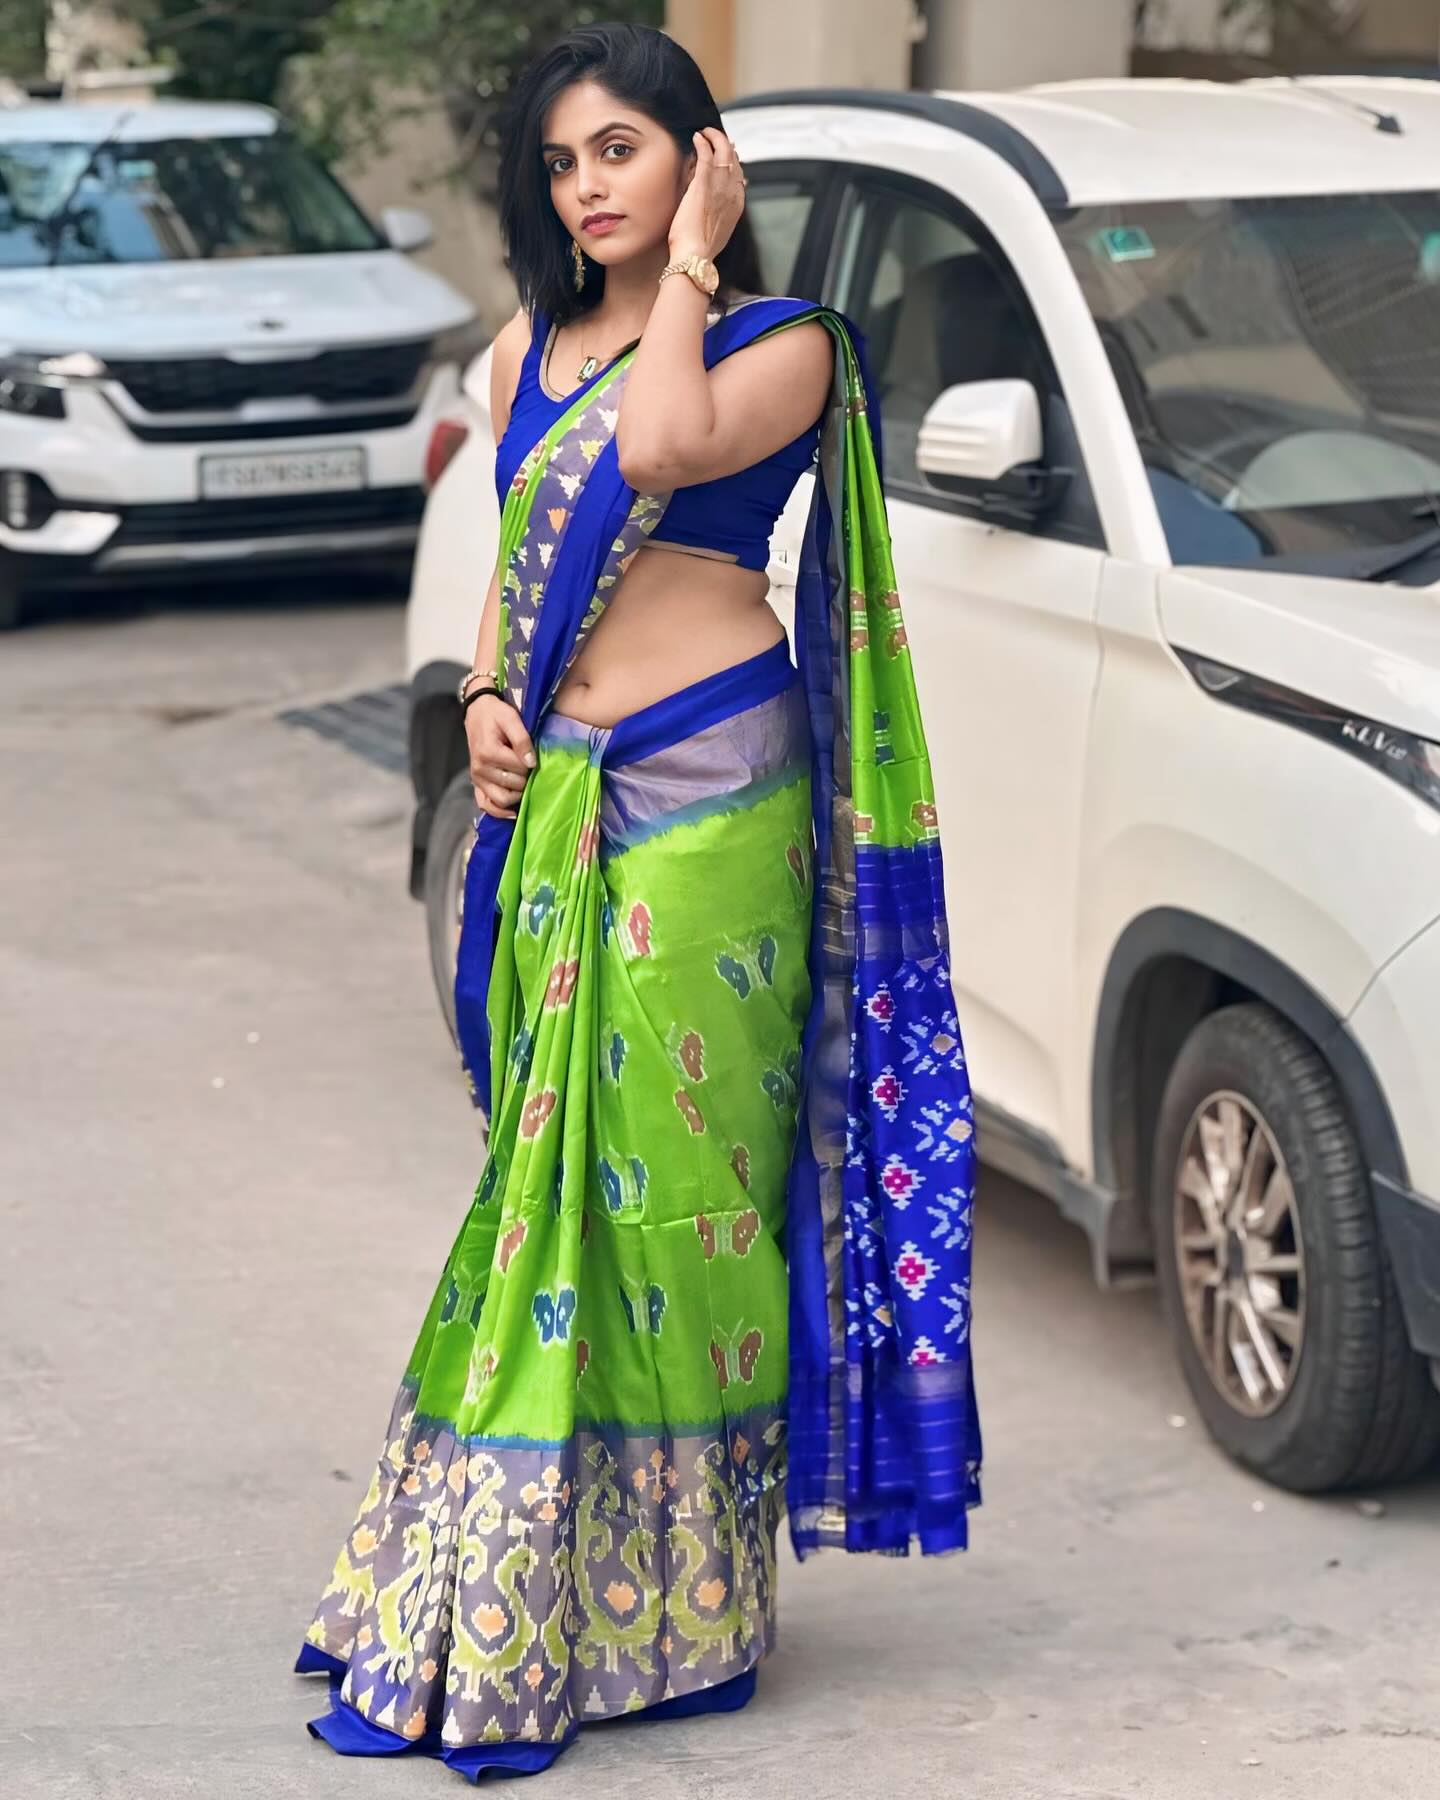 Actress and Model Pragya Nayan Green Saree